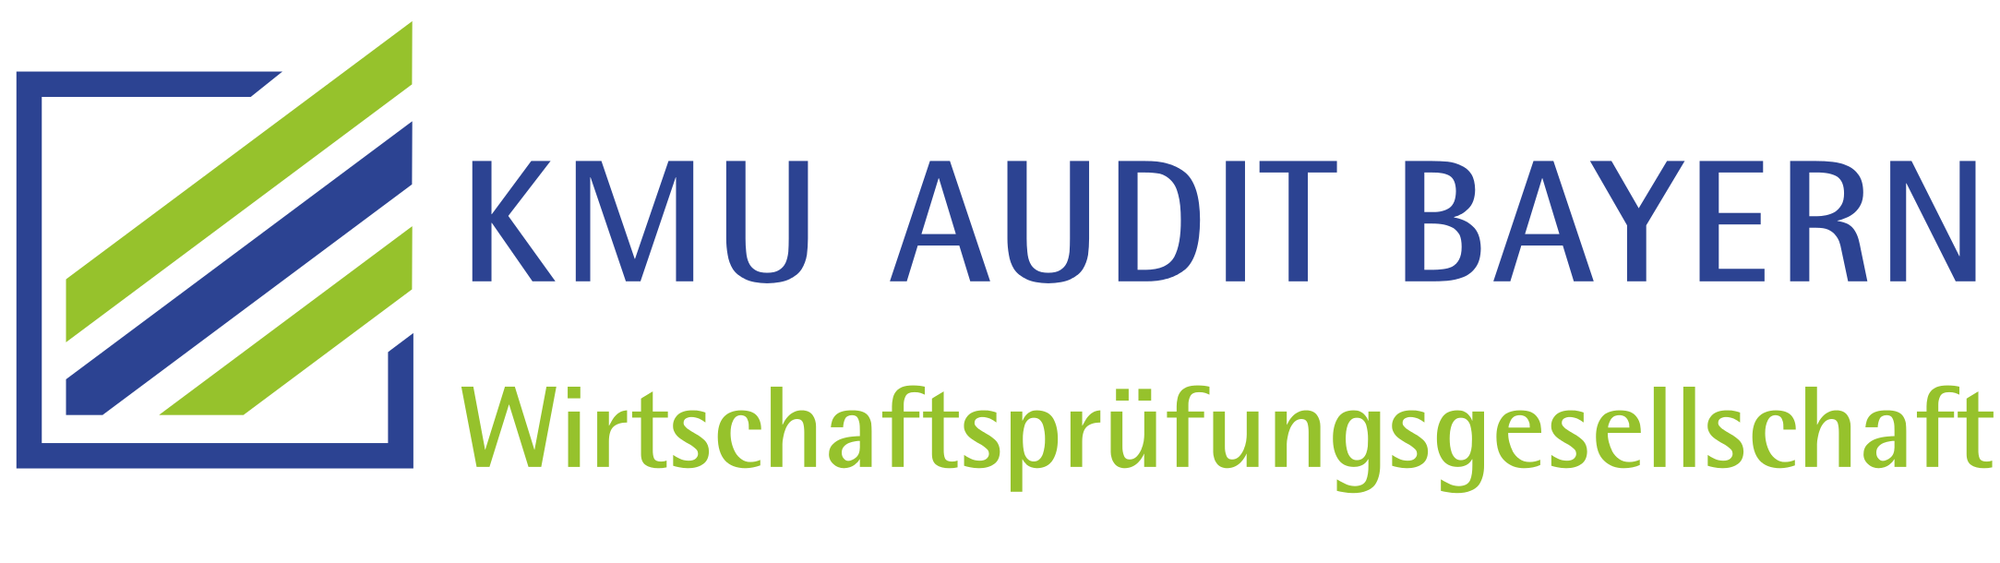 KMU Audit Bayern GmbH Wirtschaftsprüfungsgesellschaft